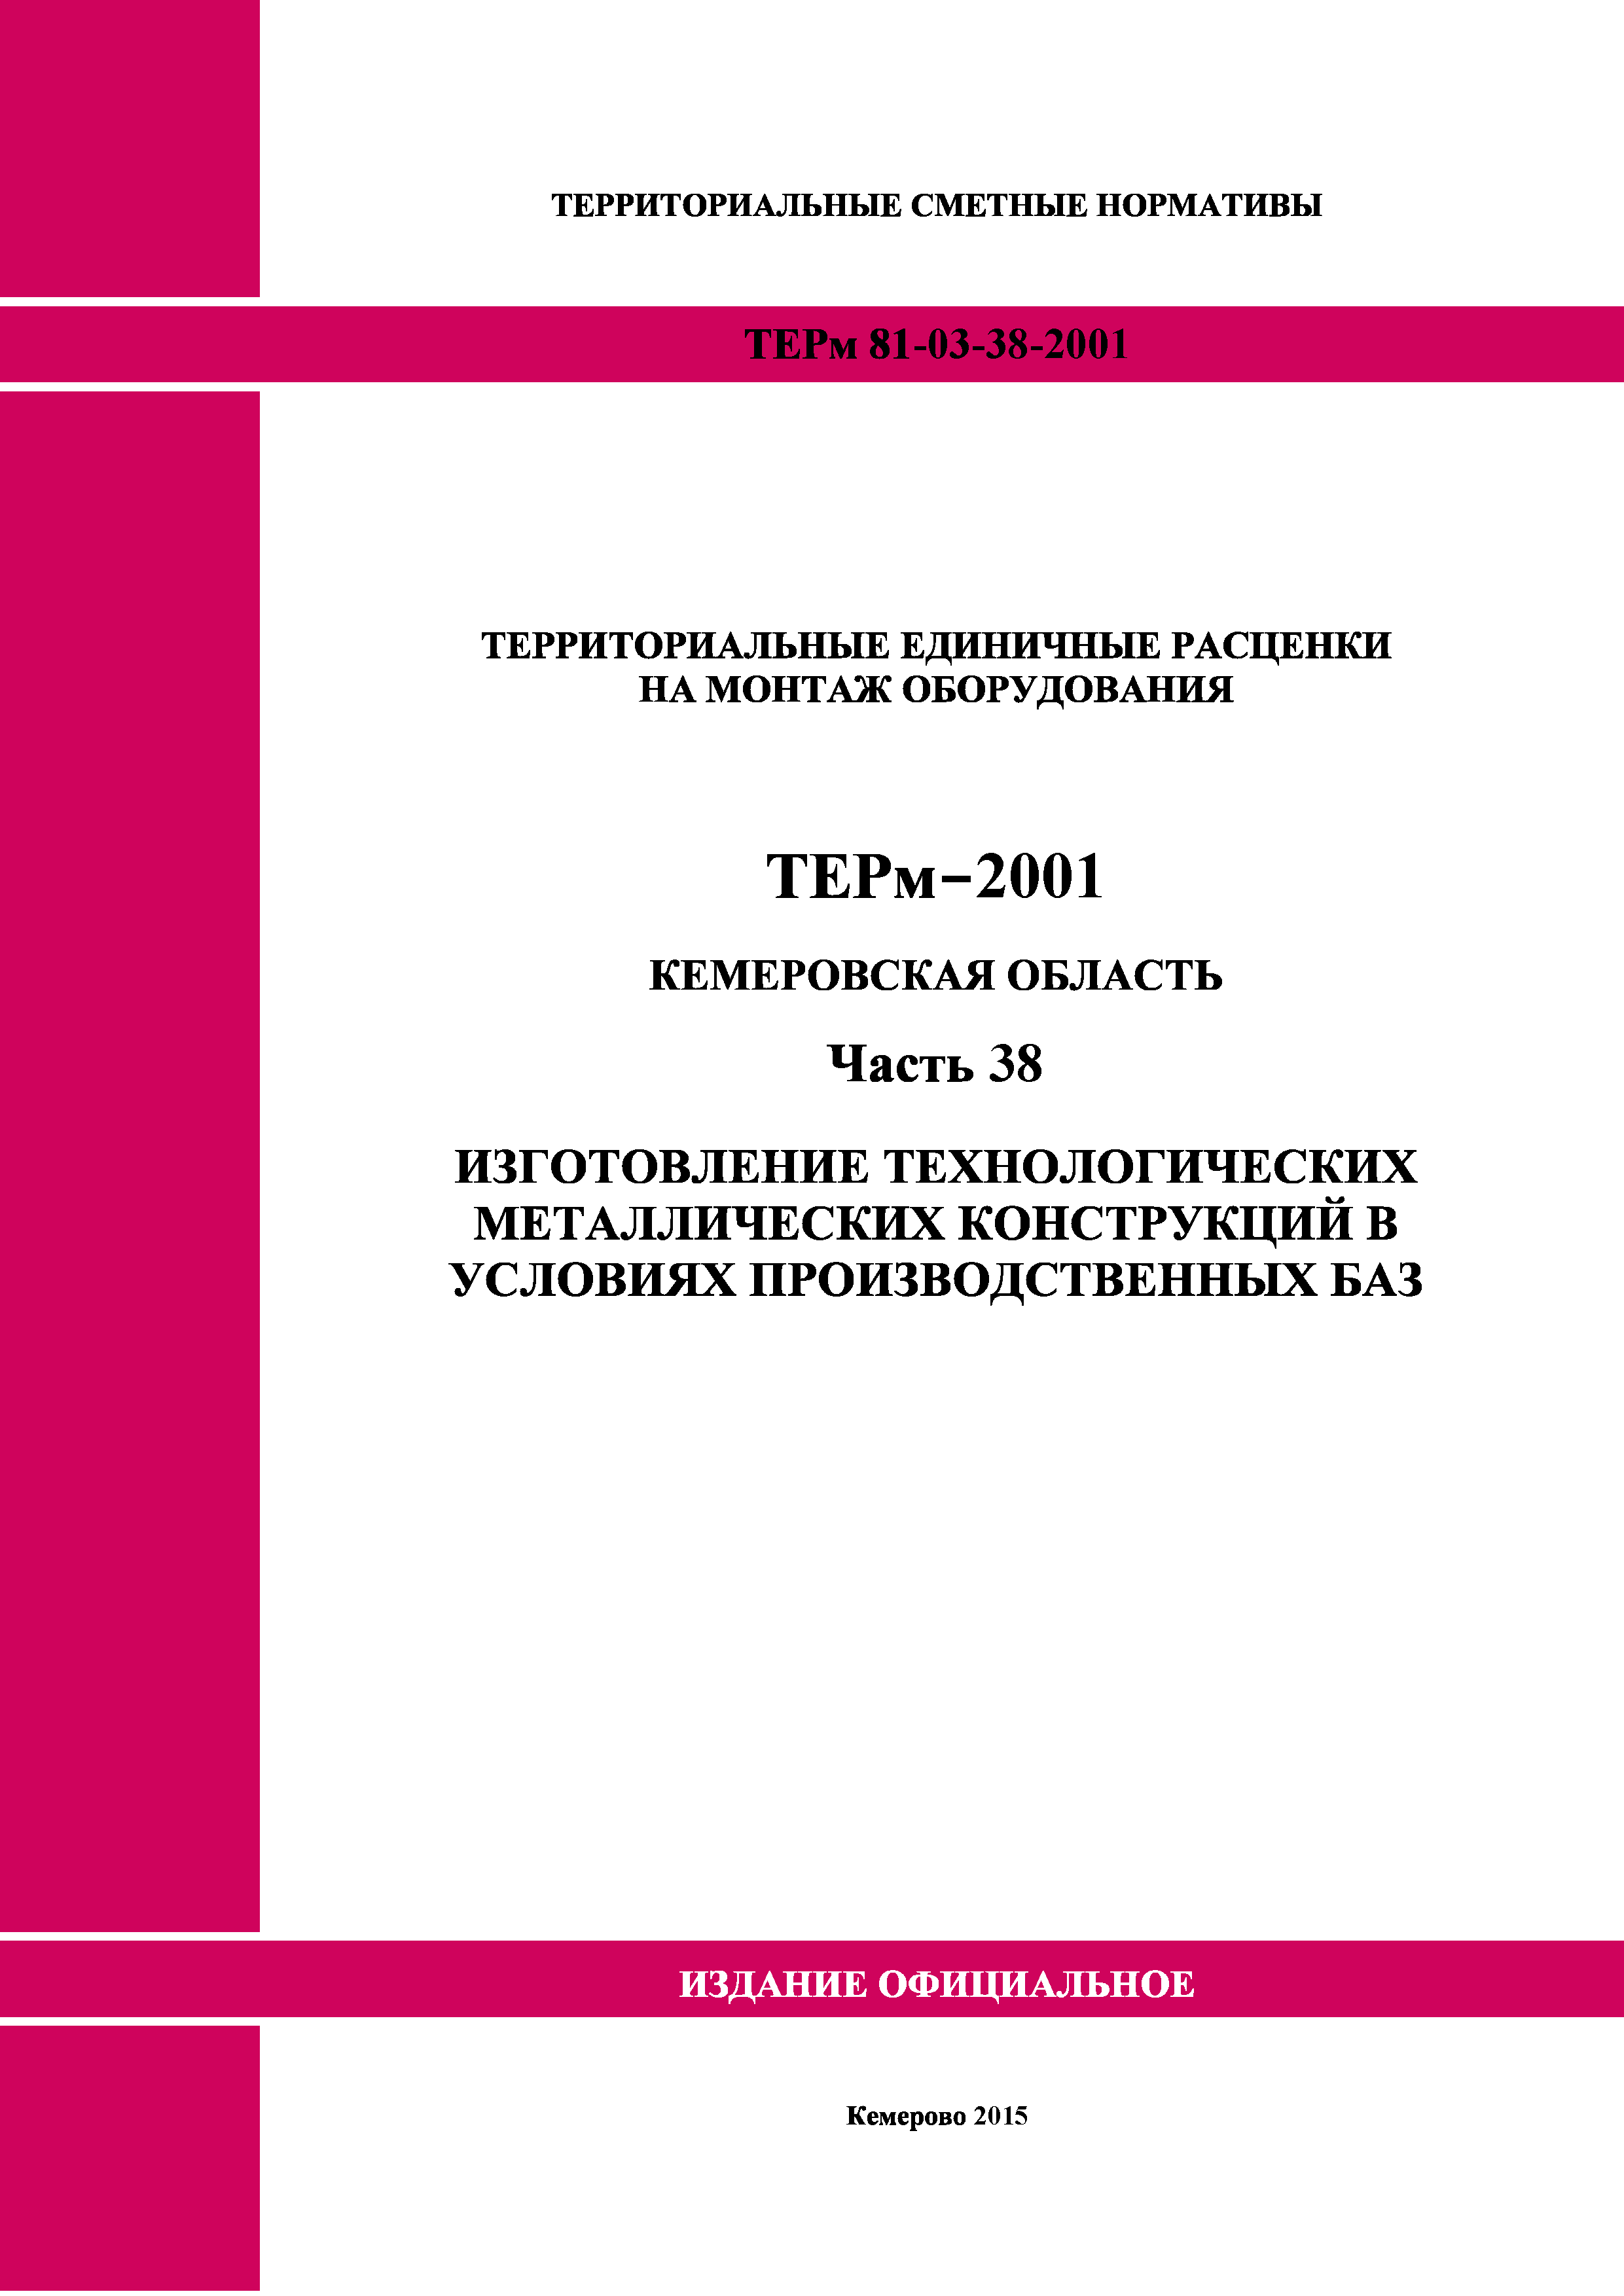 ТЕРм Кемеровская область 81-03-38-2001